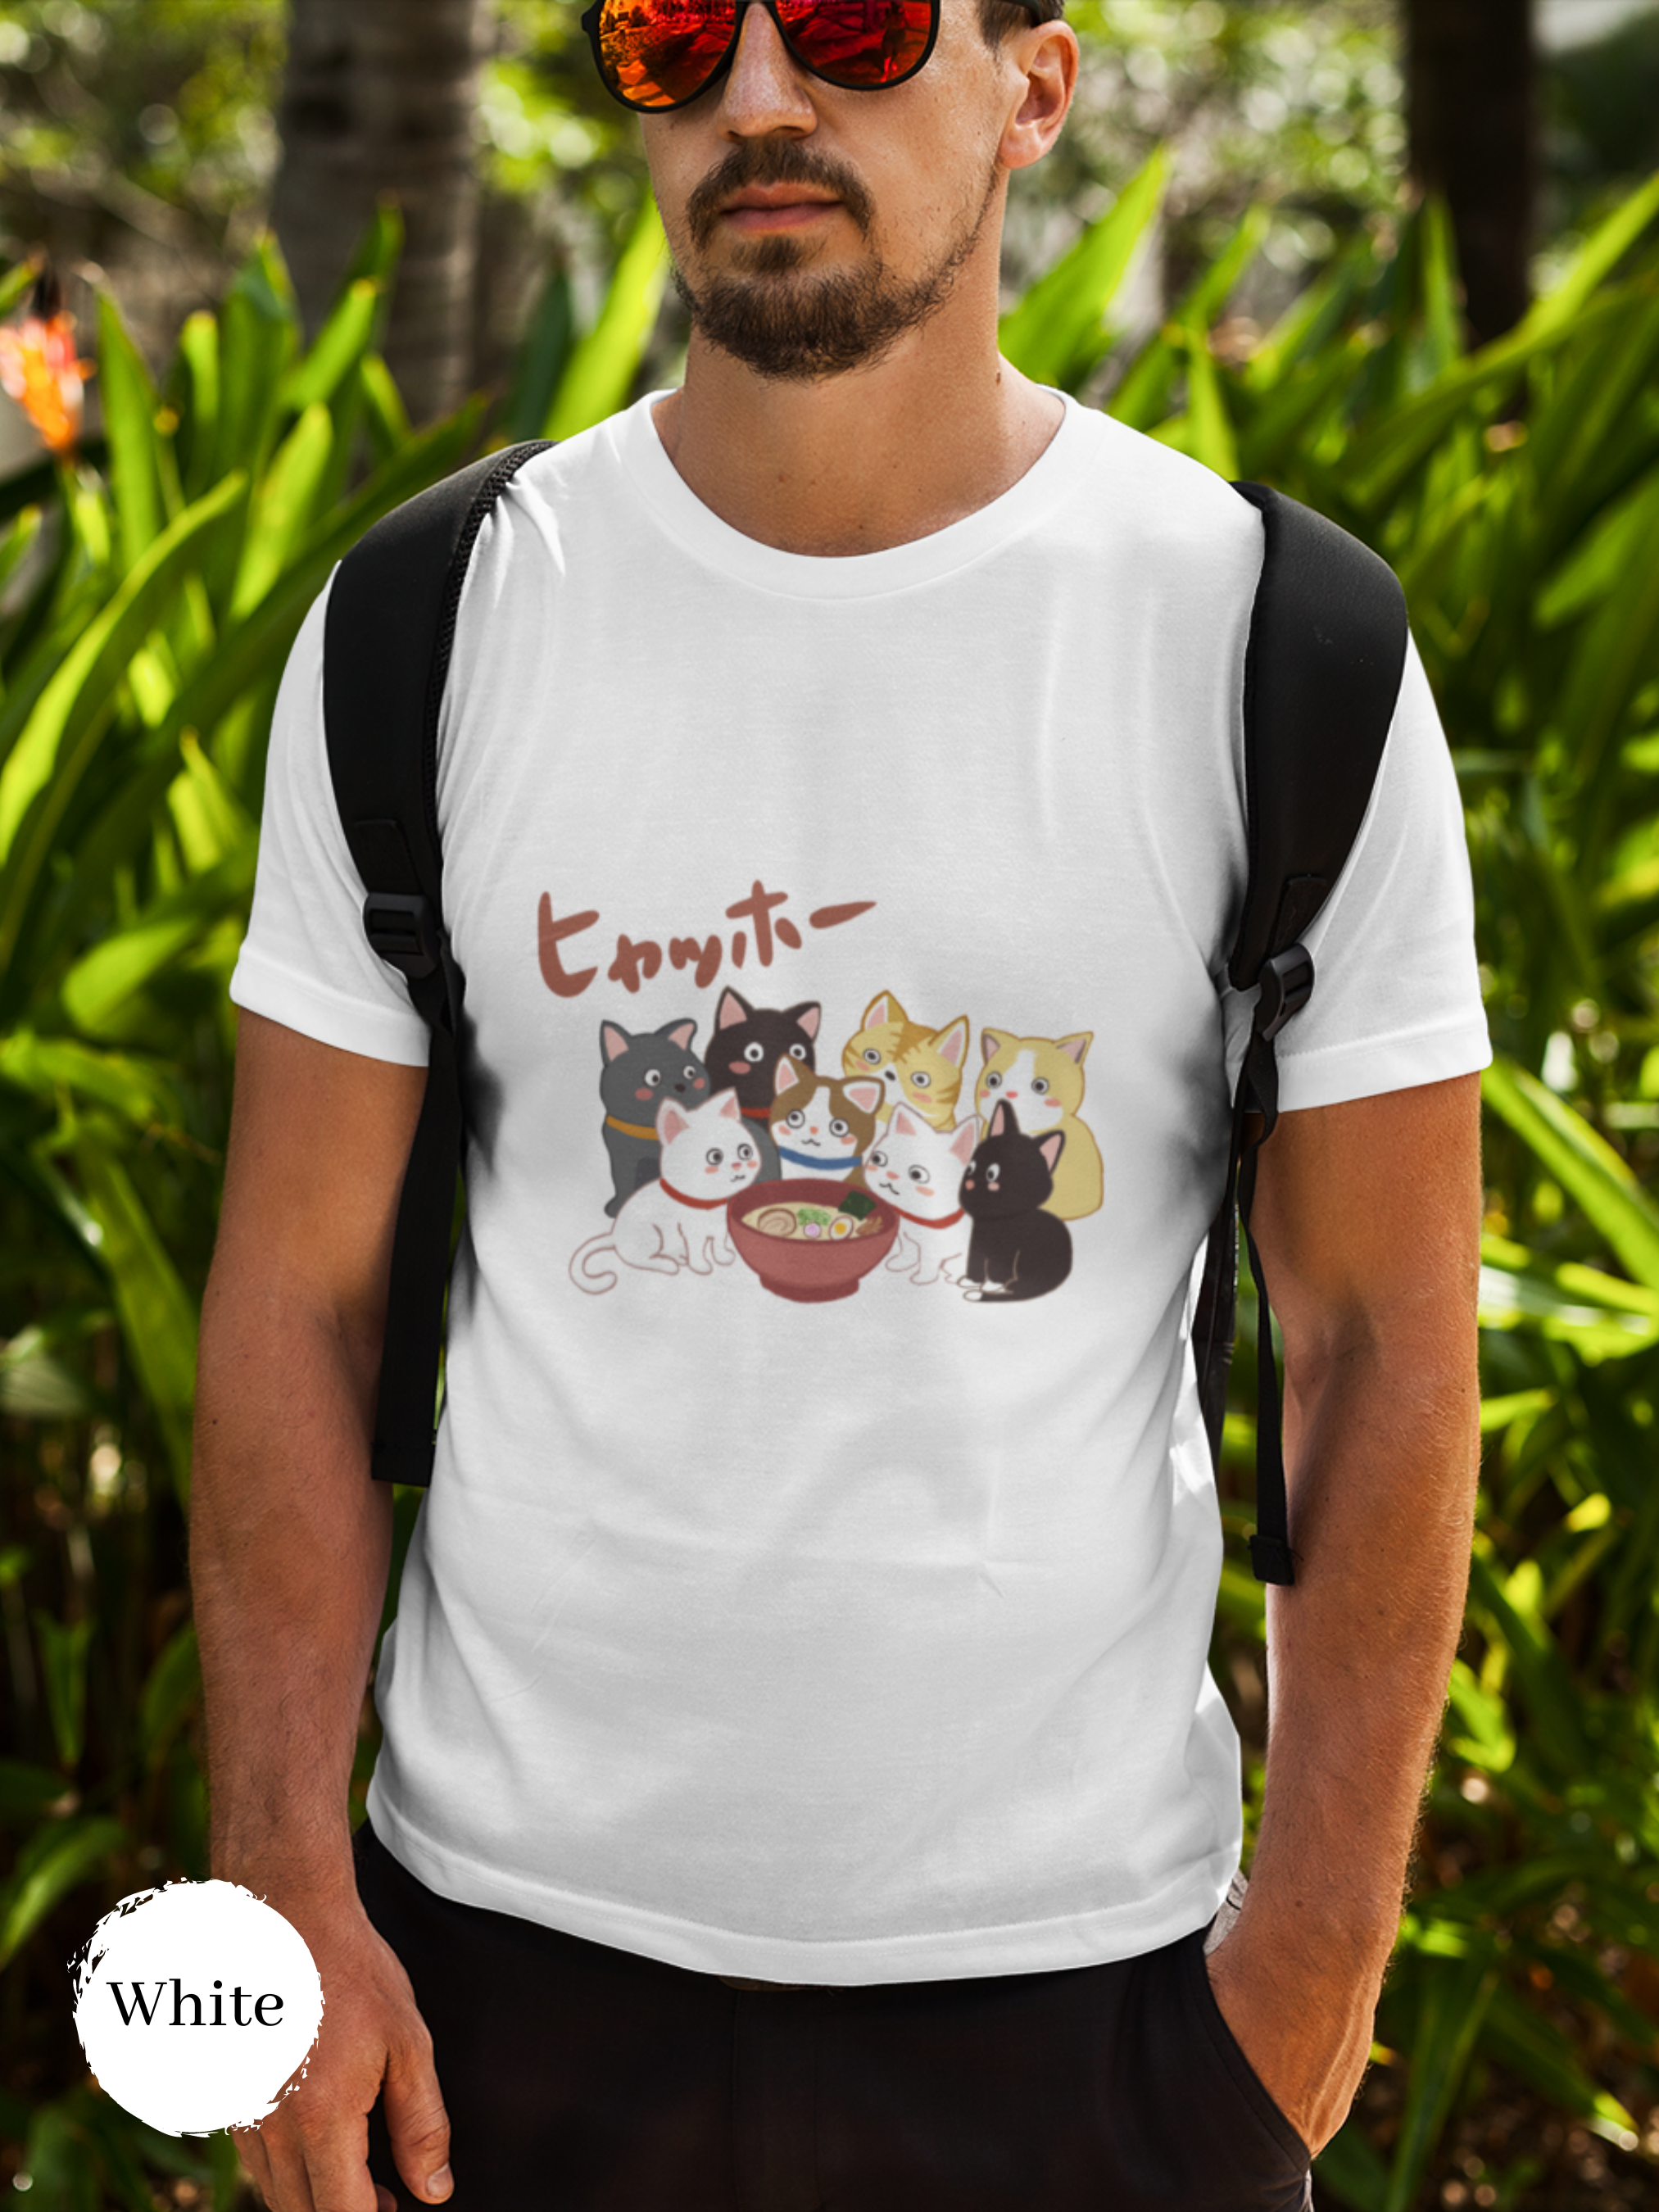 Ramen T-shirt: Japanese Foodie Shirt with Eight Cute Cats Beside Ramen Bowl - Hyahho Ramen Art